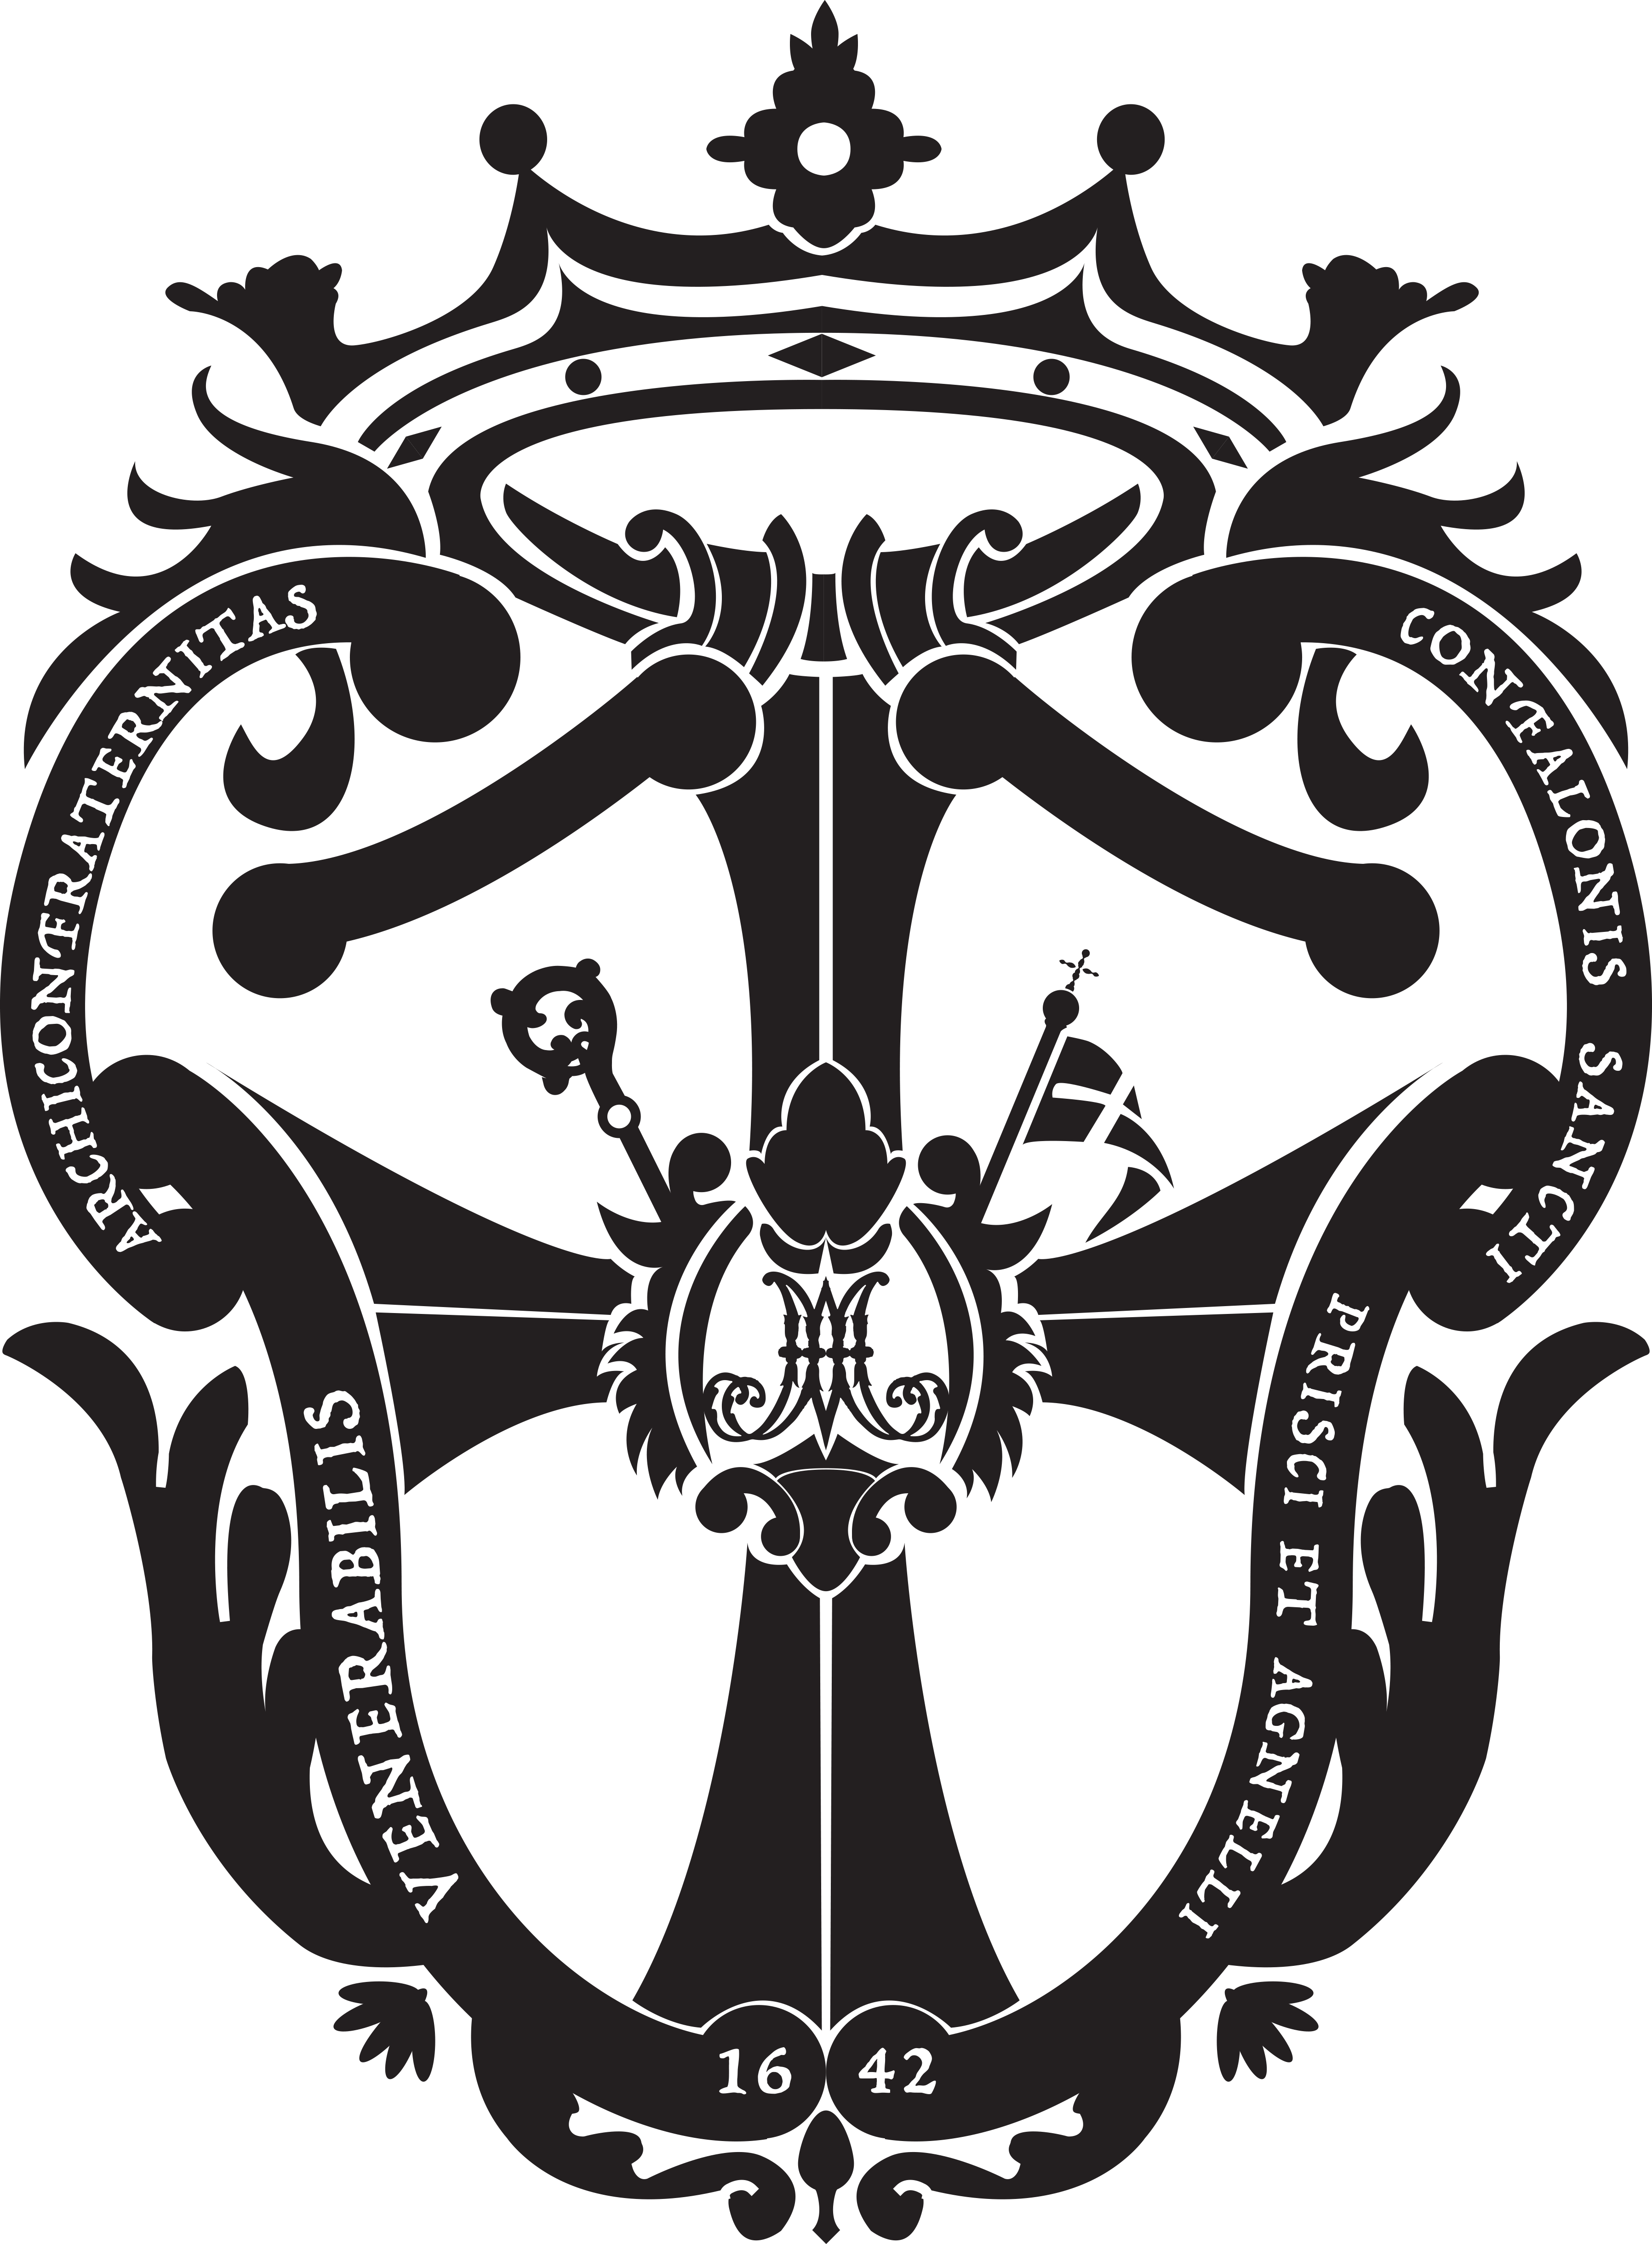 Venerabile Arciconfraternita del Gonfalone dei Santi Prisco ed Agnello